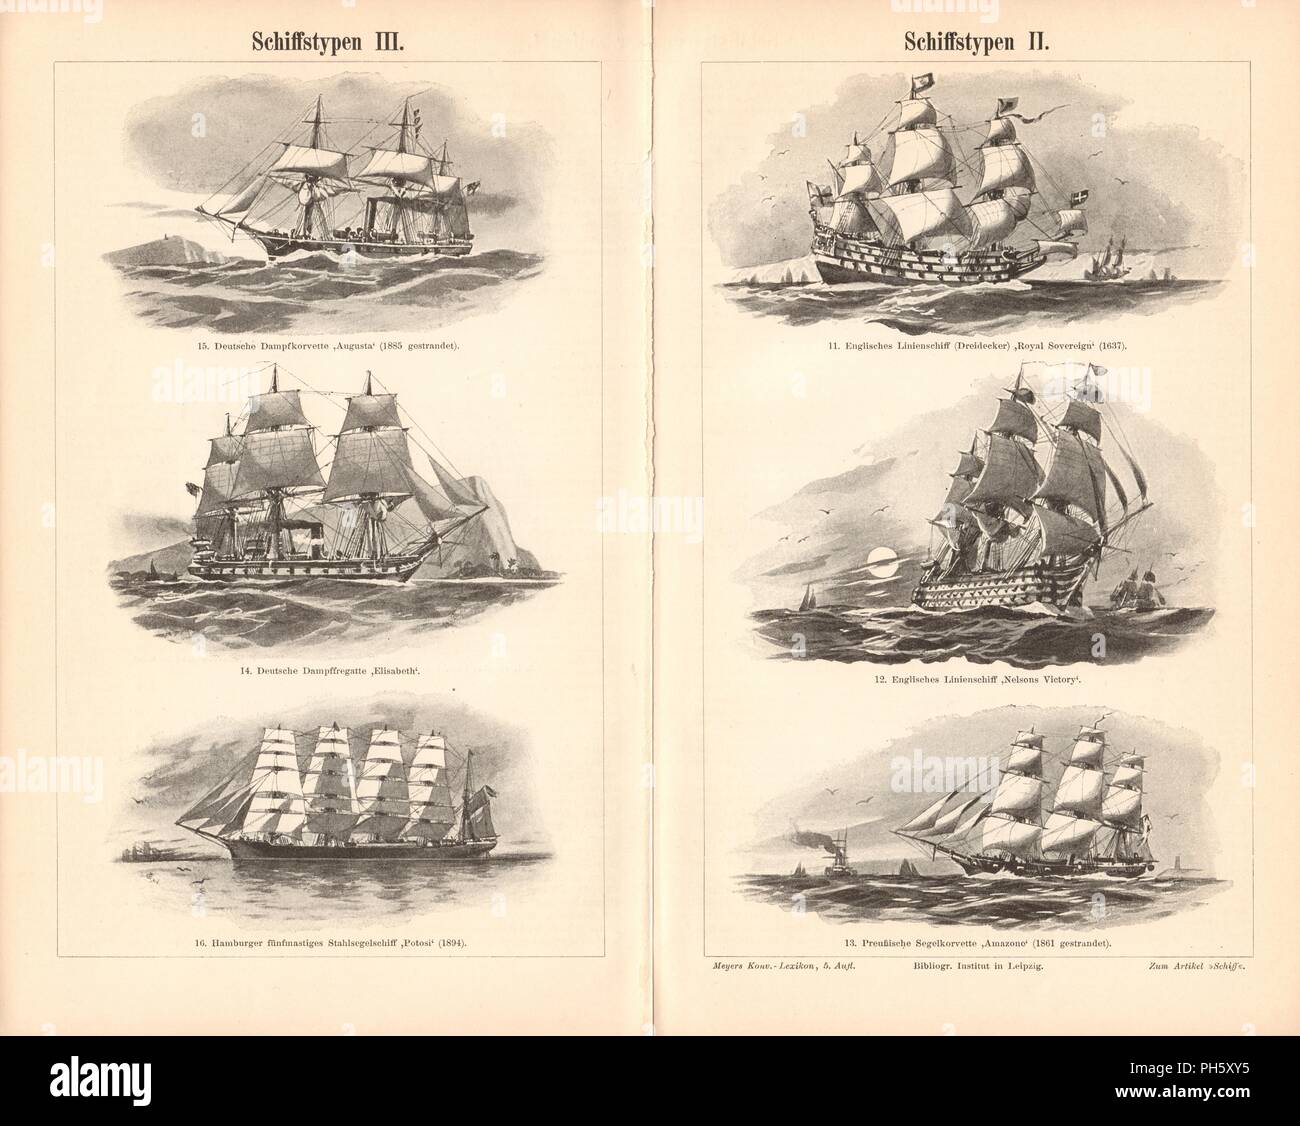 Antike Segel-schiff Illustrationen Bilder enthalten eine Reihe von Schiffen, die ursprünglich für Enzyklopädien der späten 1800s dargestellt. Stockfoto